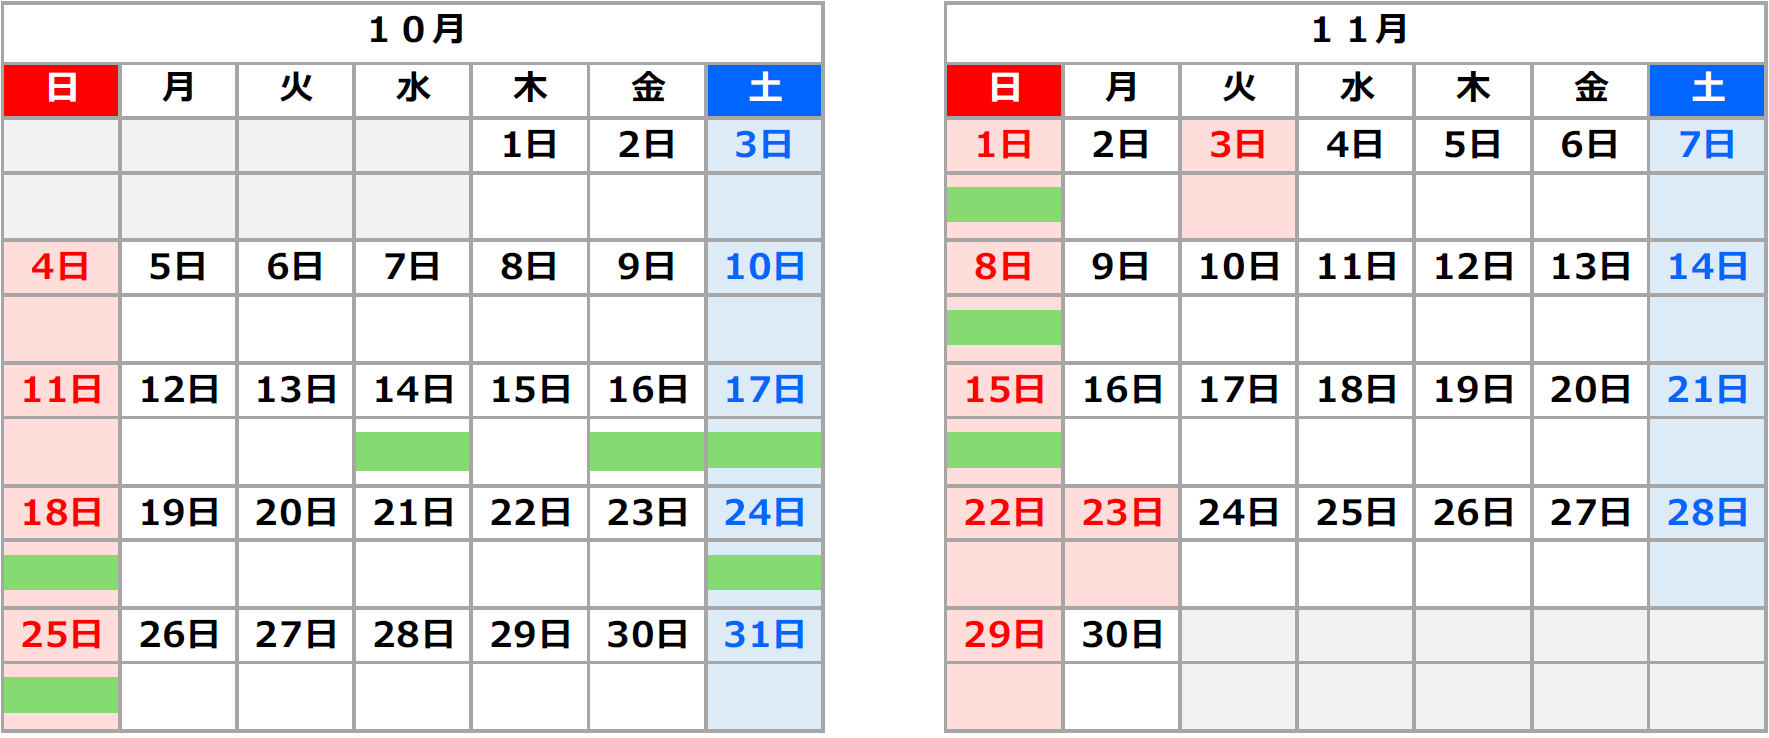 Image image of Kunimi IC → Shiraishi IC (Out-bound line) 1